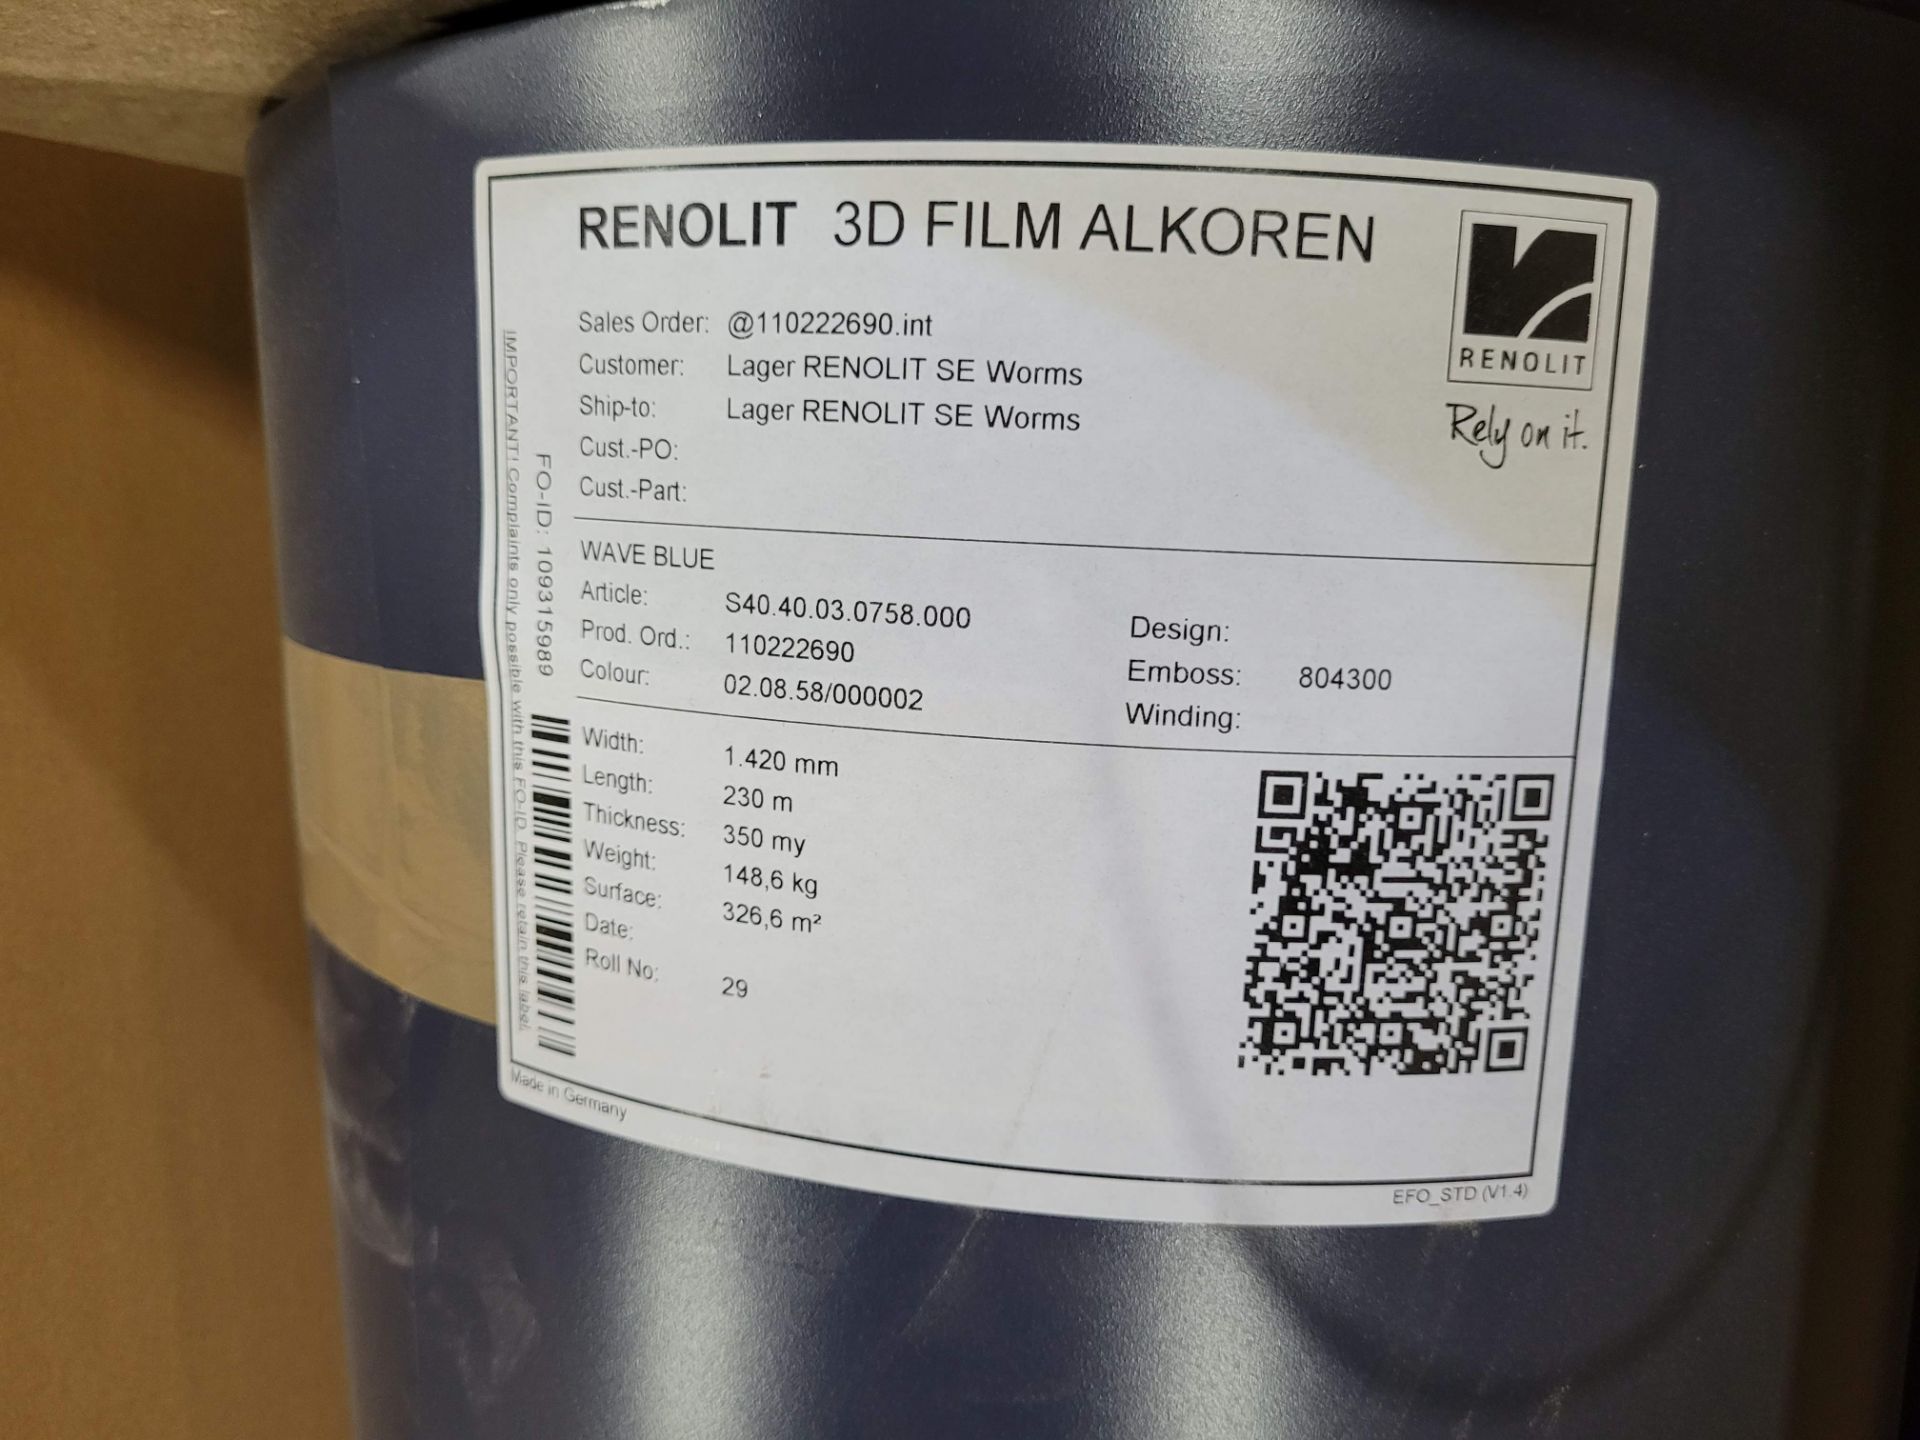 LOT - 3D FILM ALKOREN (4 ROLLS) - Image 2 of 3